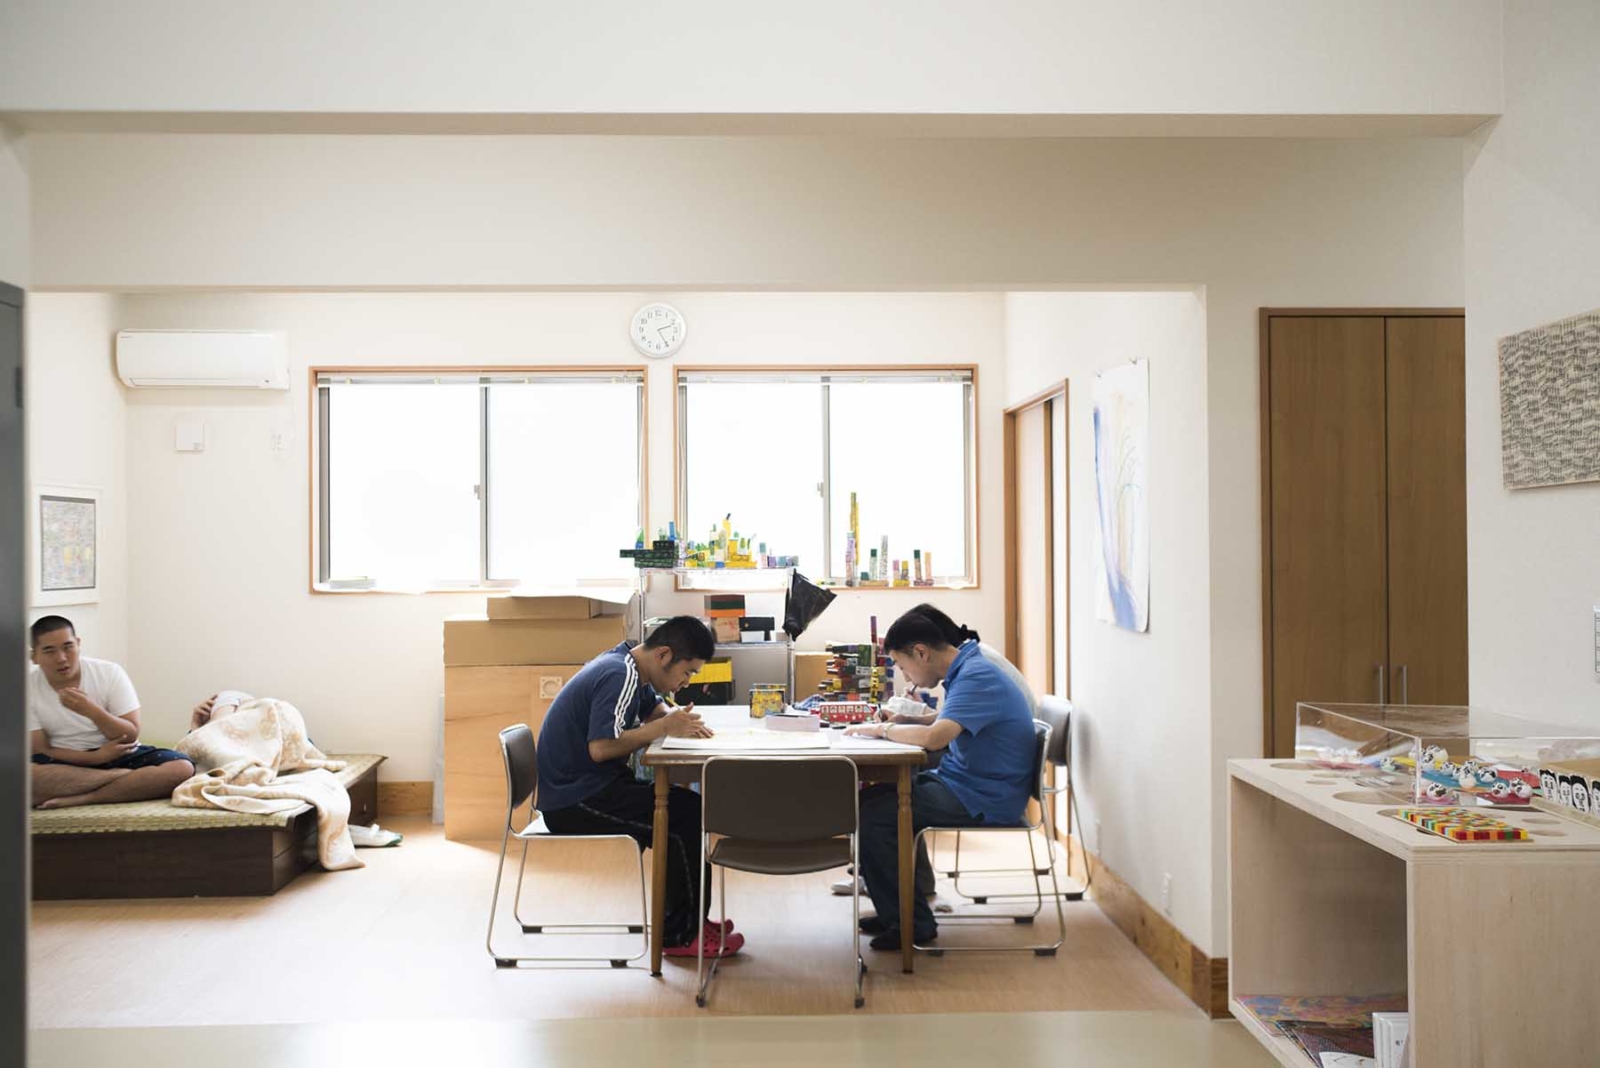 【写真】奥に窓が２つある部屋で２人の人物が向かい合って机で作業している。